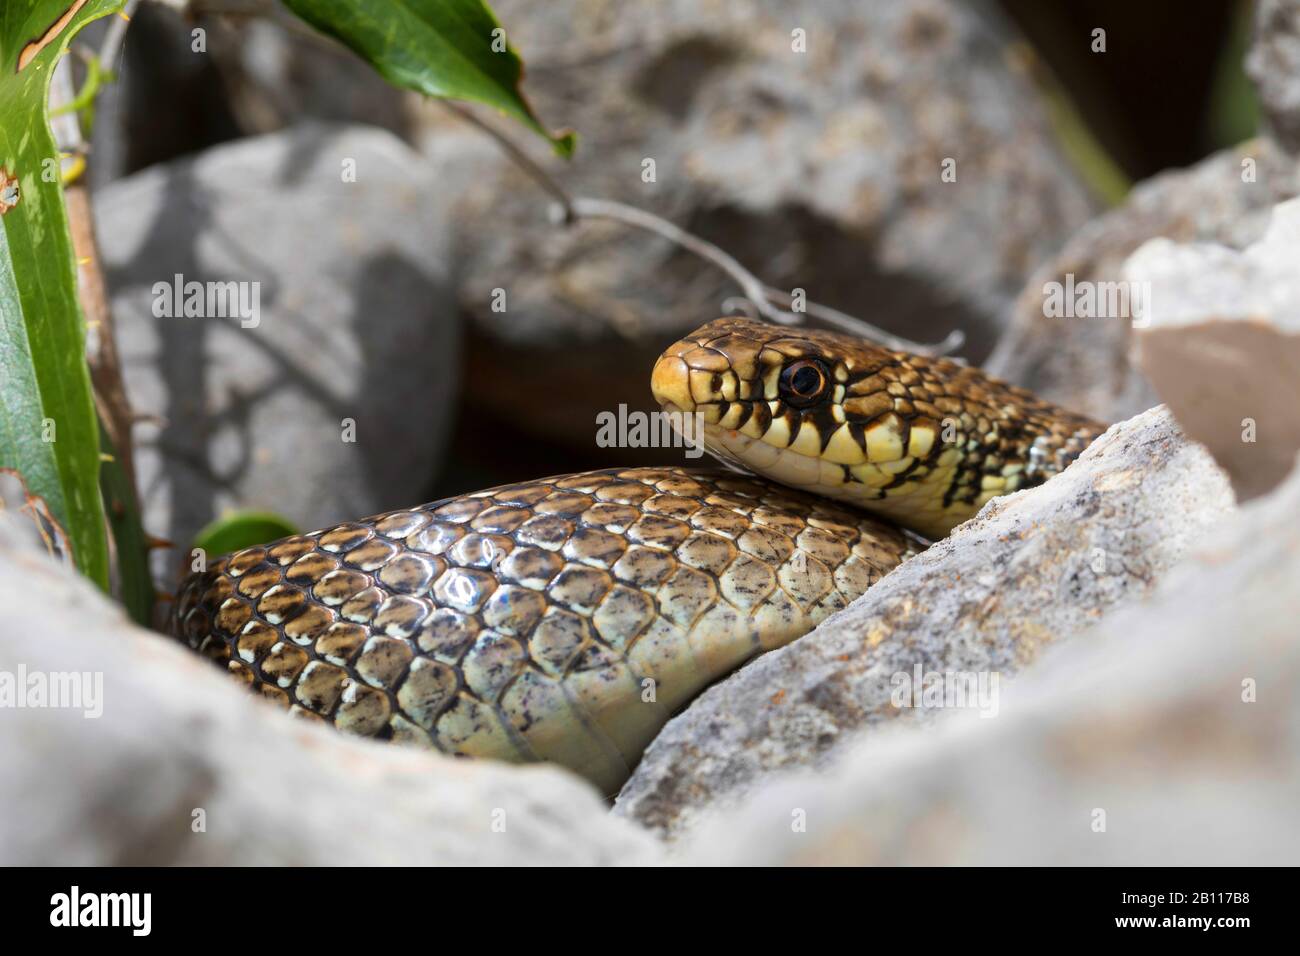 Serpiente de látigo balcánico (Hierophis gemonensis, Coluber gemonensis), enrollado entre piedras, Croacia Foto de stock